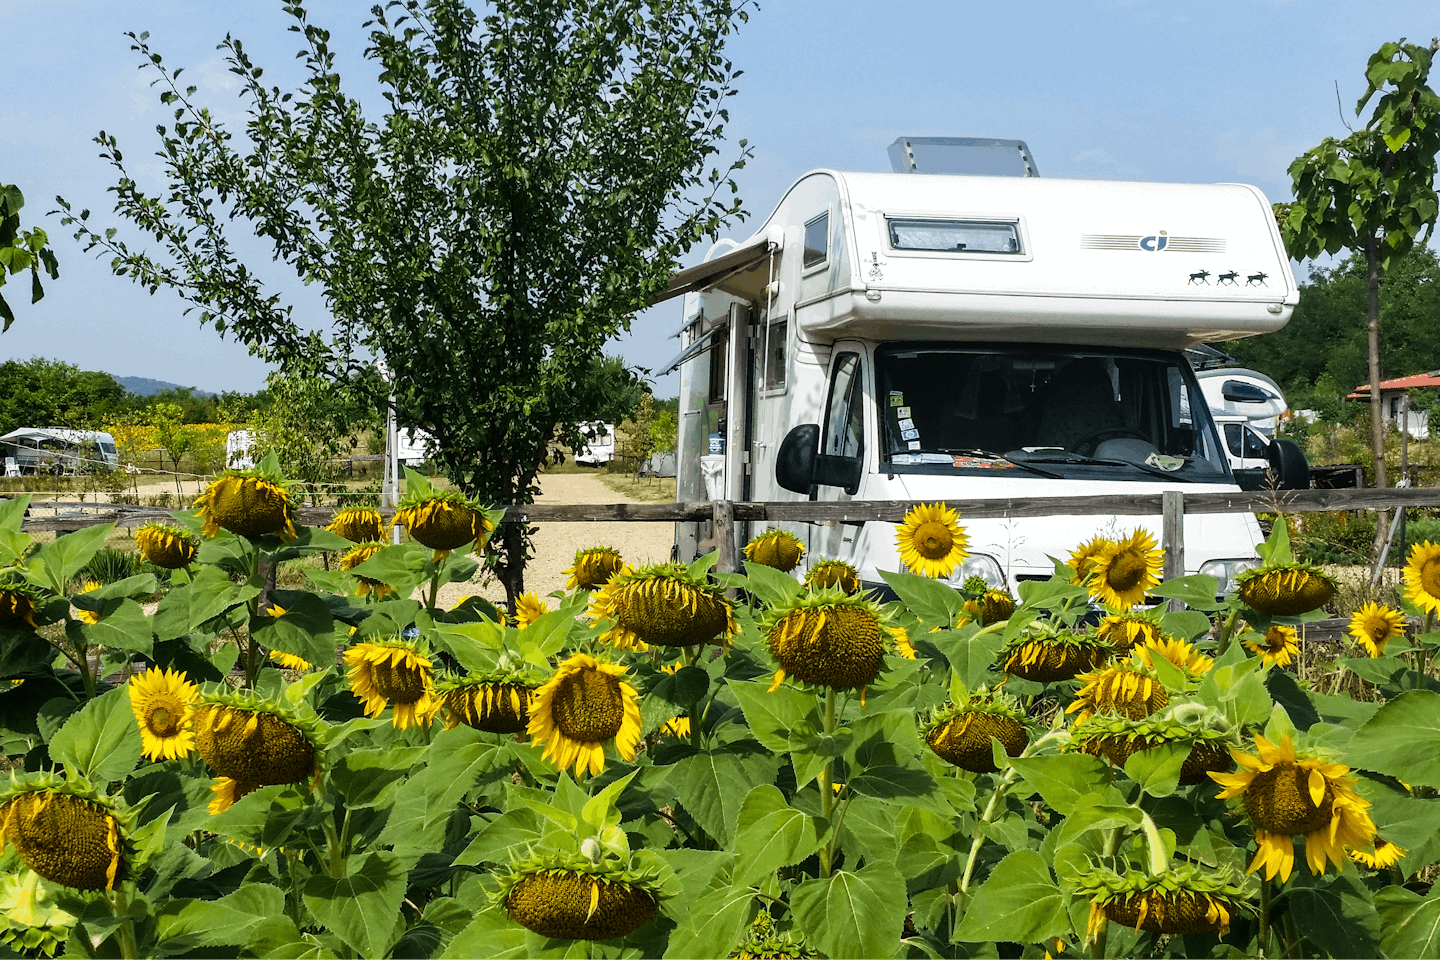  Camping Veliko Tarnovo  - Stellplatz mit Sonnenblumen auf dem Campingplatz